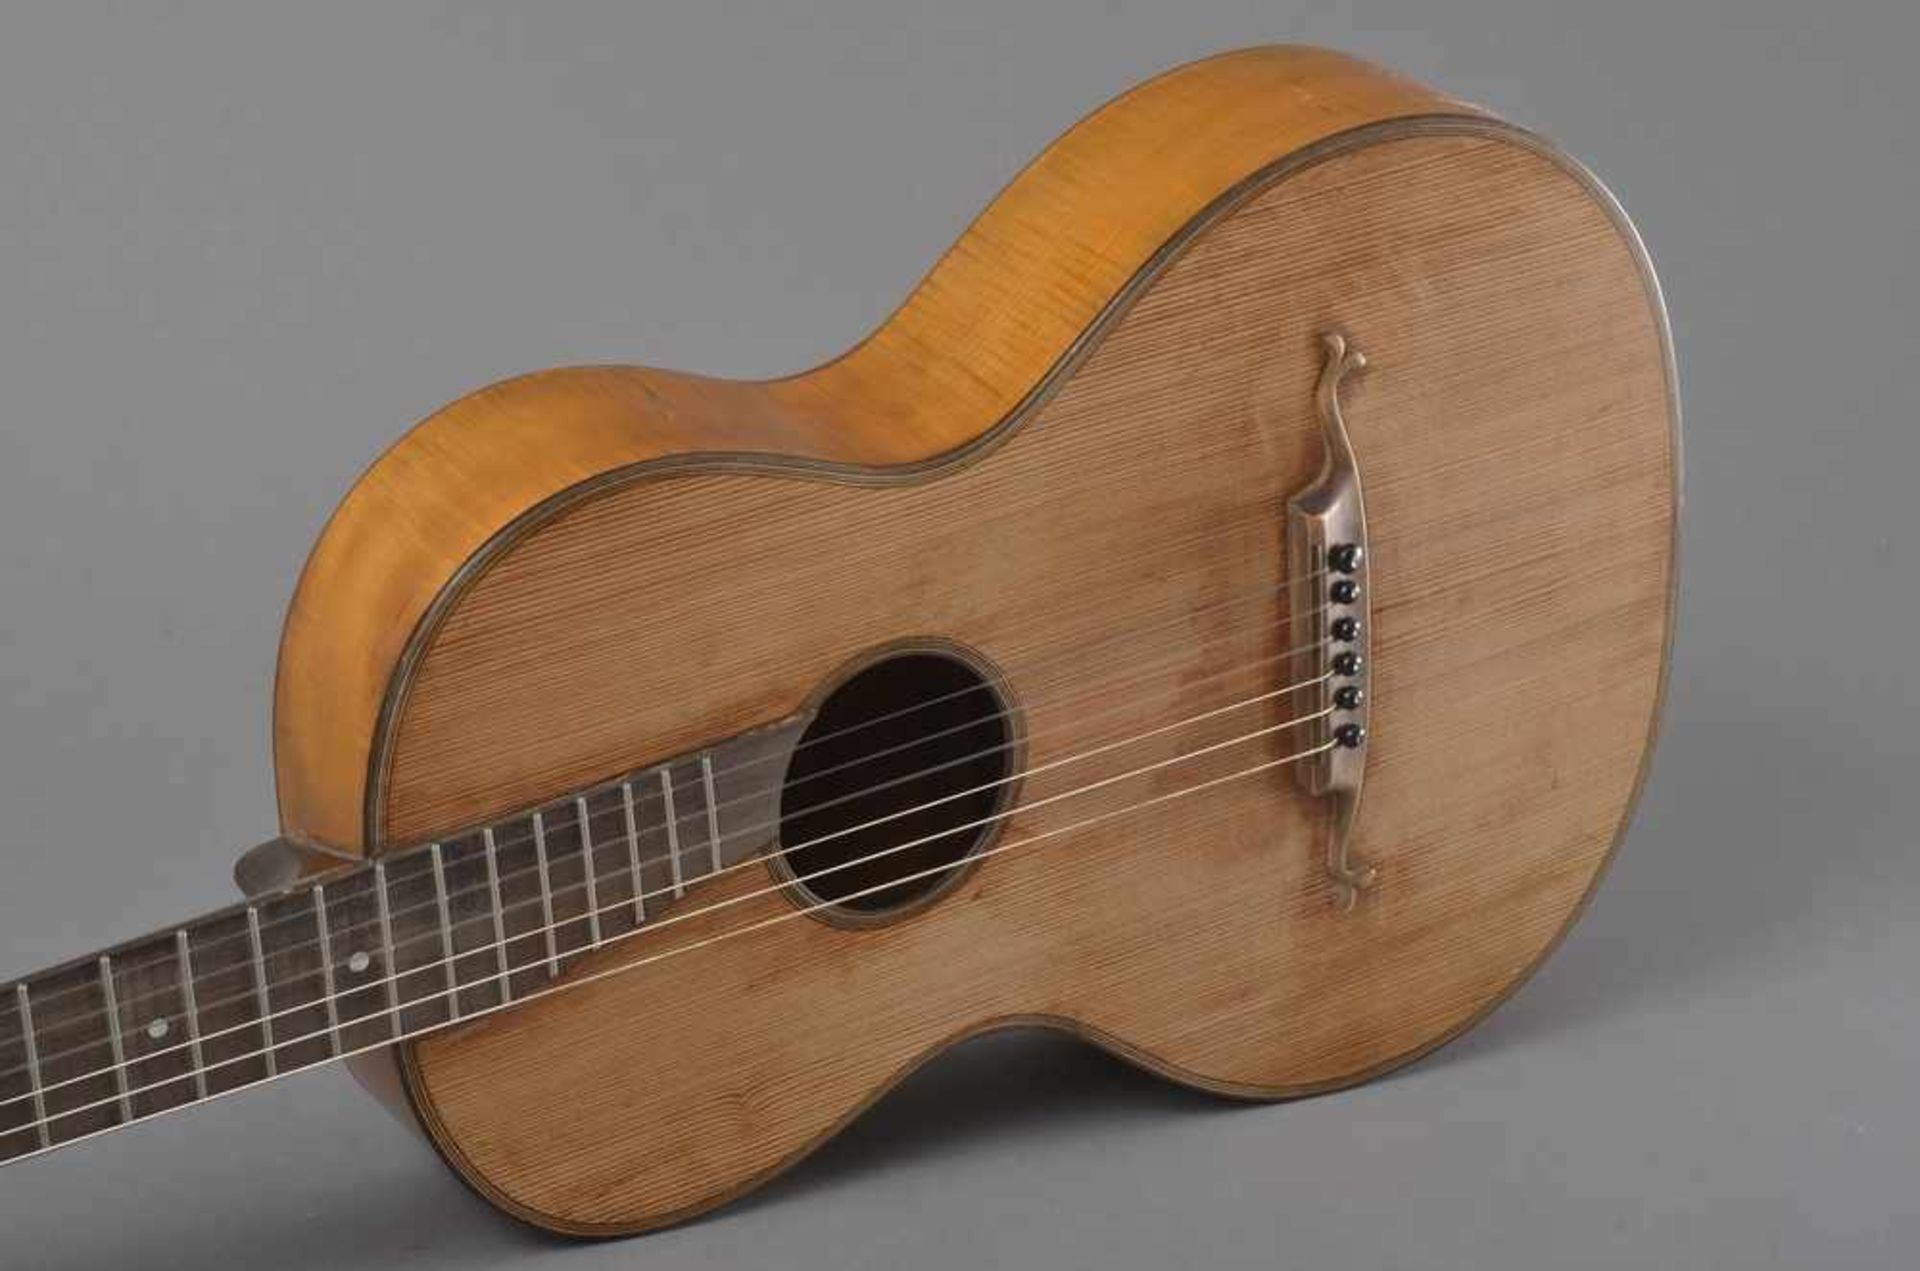 Historische Gitarre, Mensur 61,3cm, Gesamtlänge 93cm, Saitenhöhe 5mm, ca. 100 Jahre alt, spielbar - Bild 4 aus 7